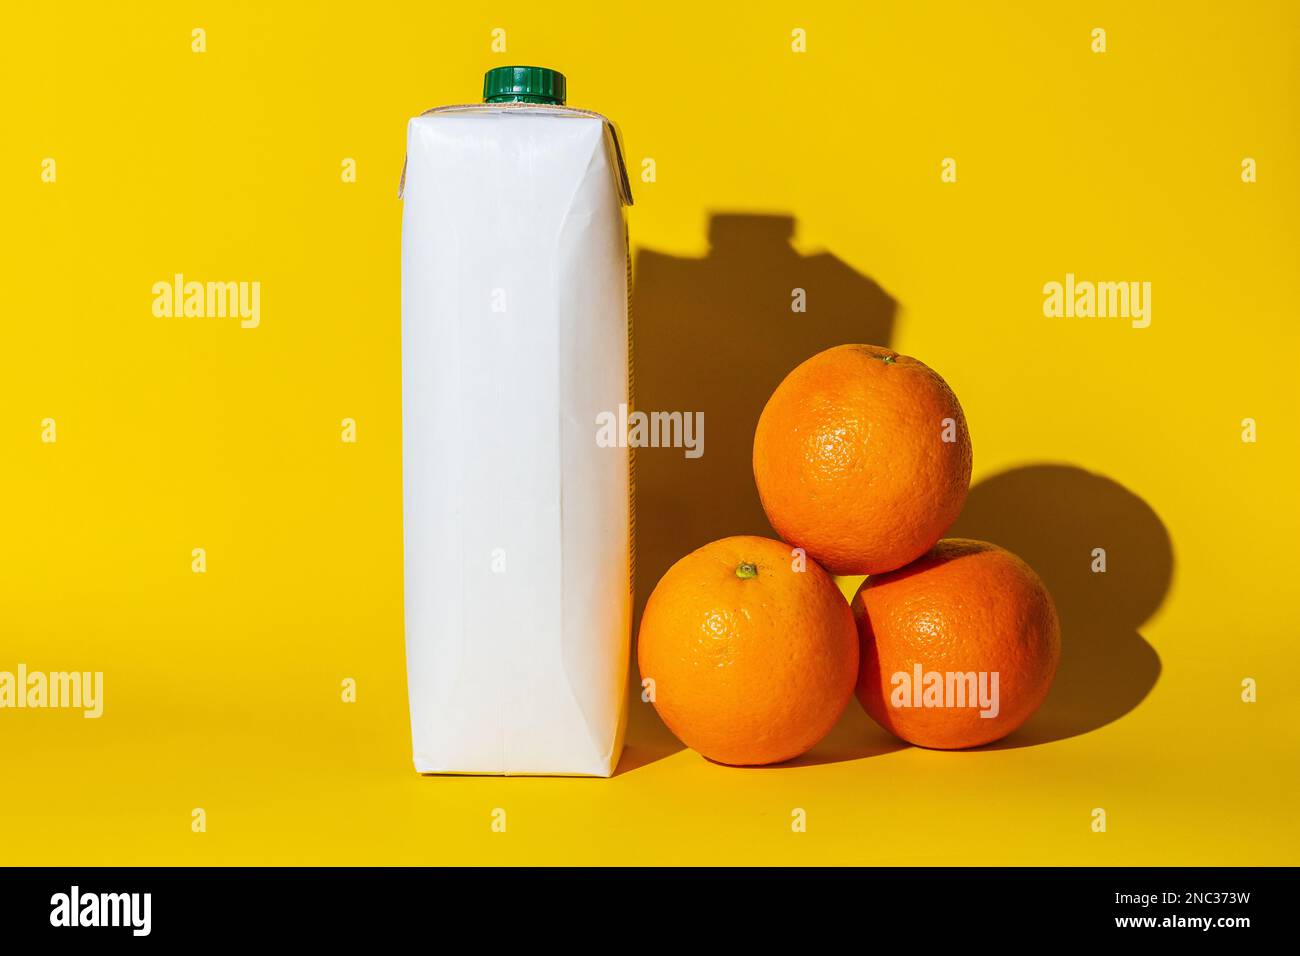 pacchetto succo vuoto copia spazio arance, succo d'arancia per bere, diversi oggetti, ombra dura, bianco cartone arance colore, giacciono sulla superficie della y Foto Stock